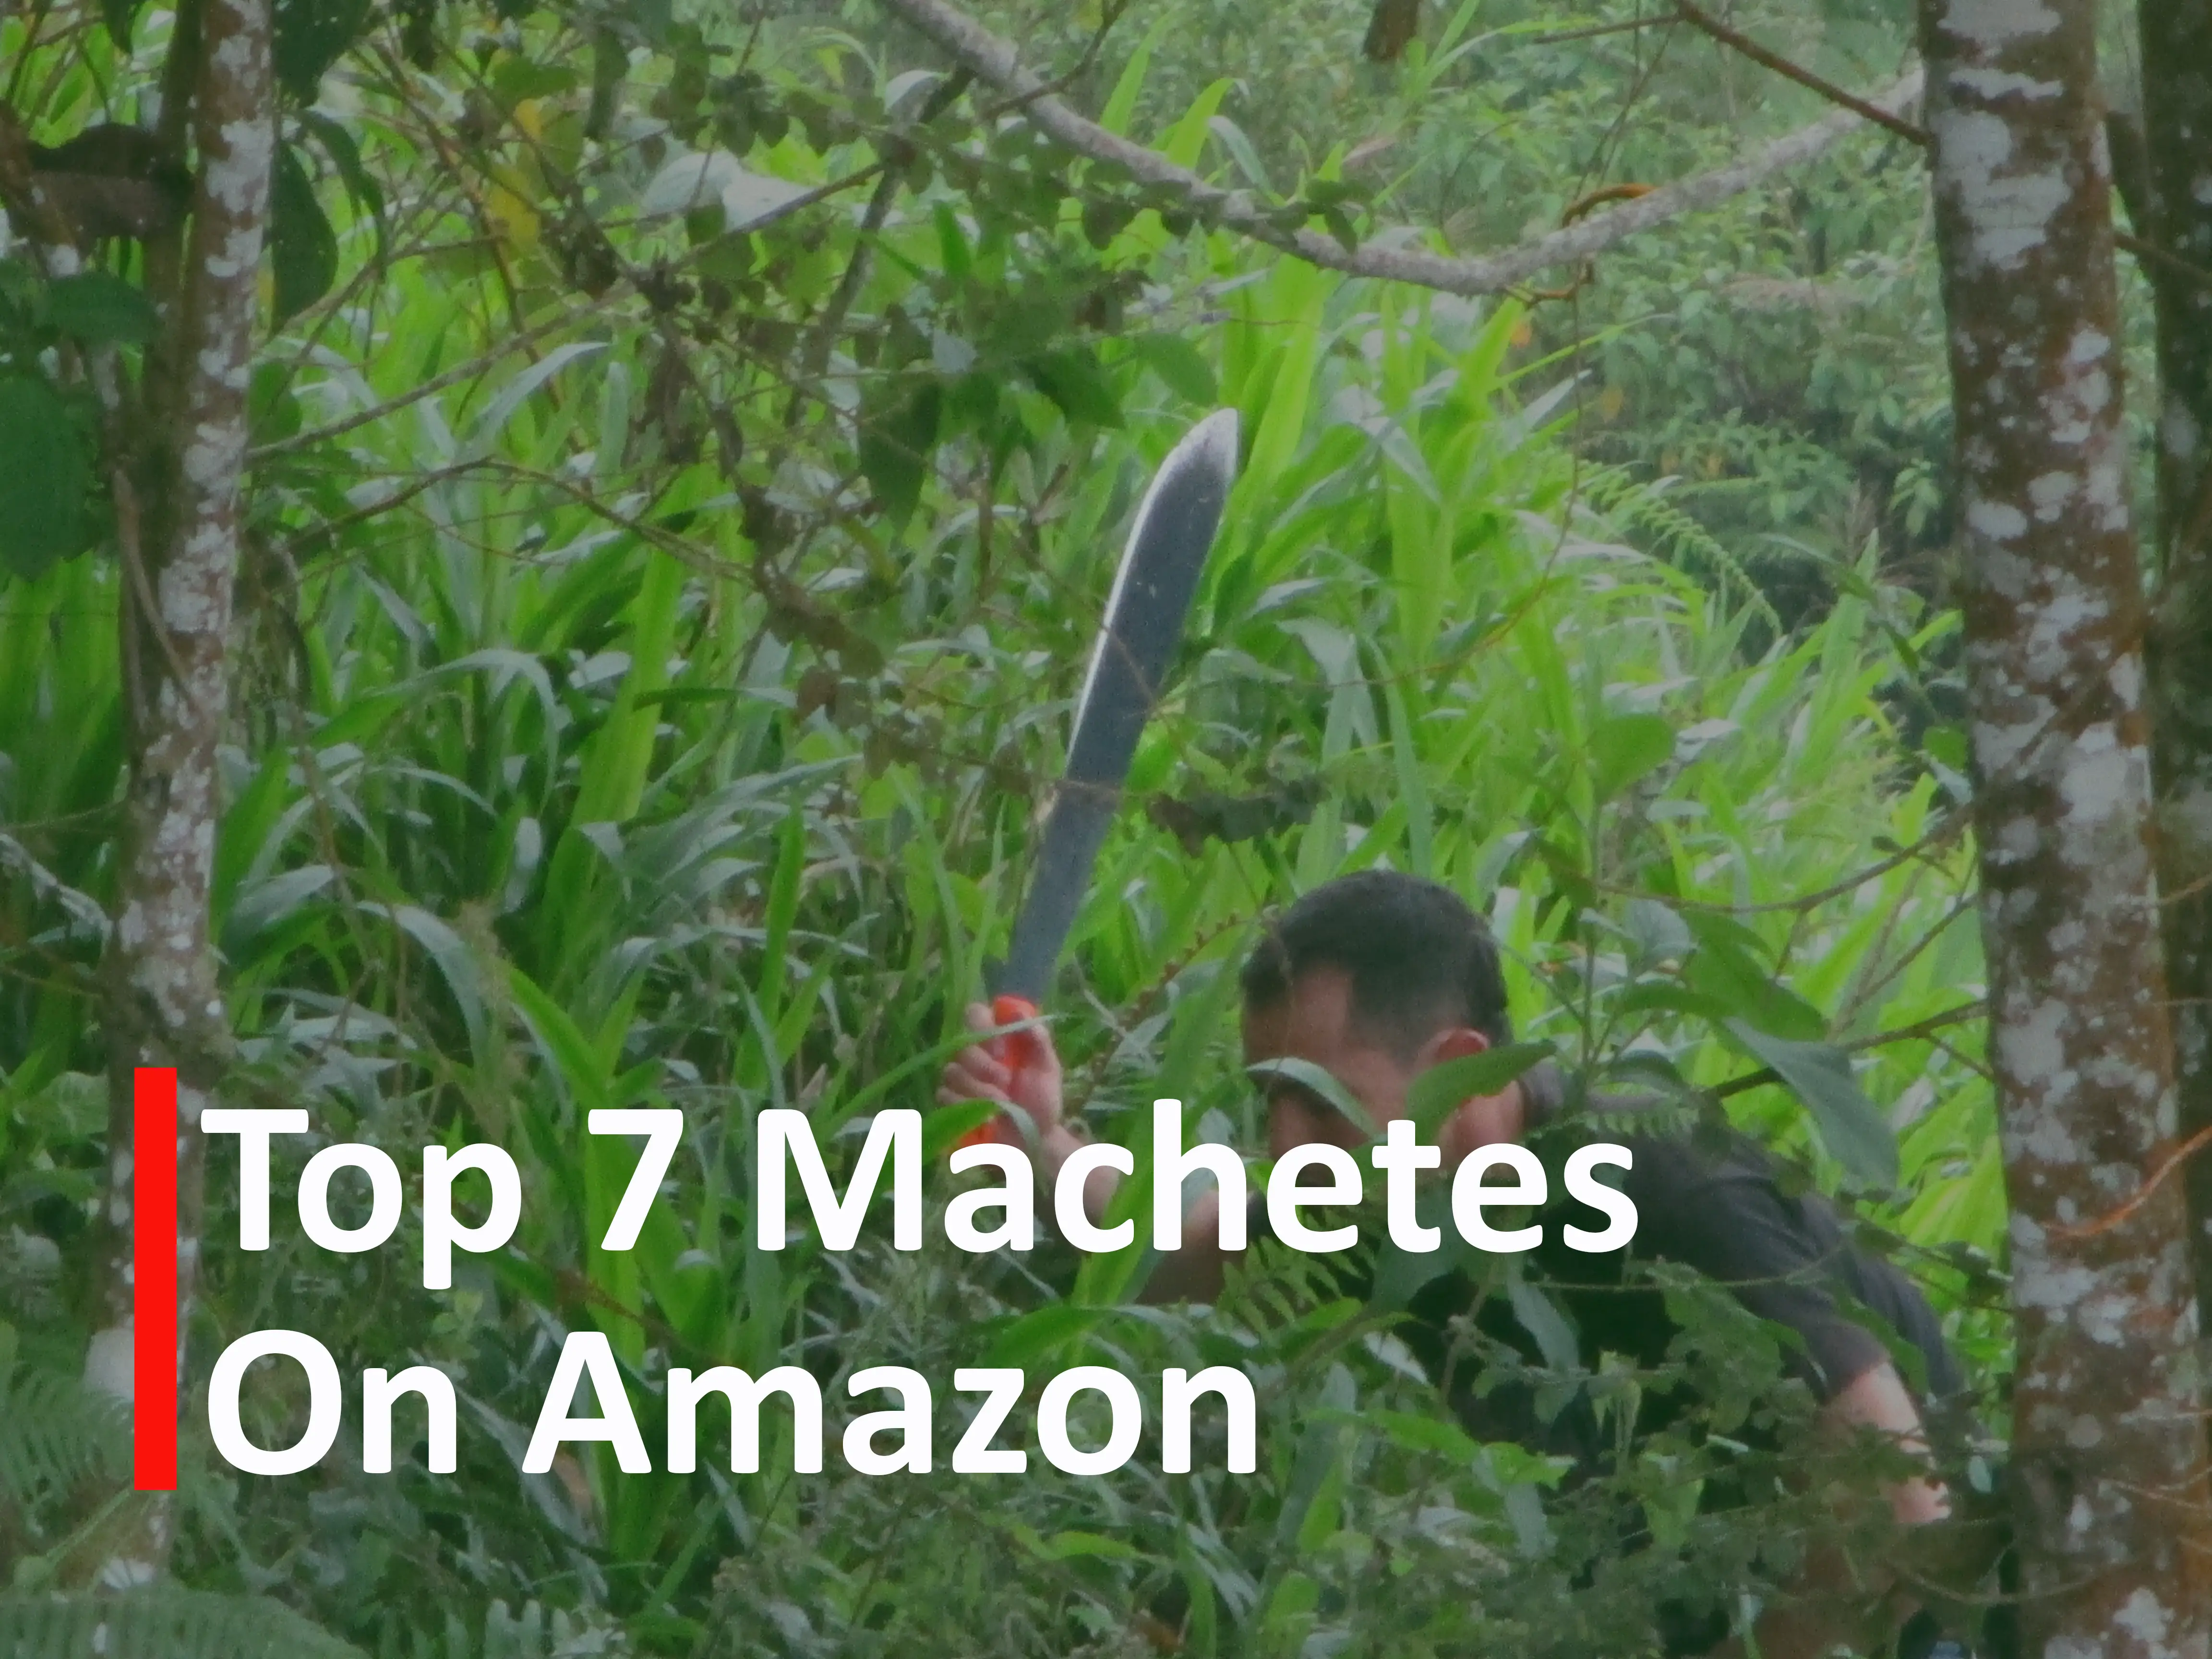 Illustration for Top 7 Machetes on Amazon